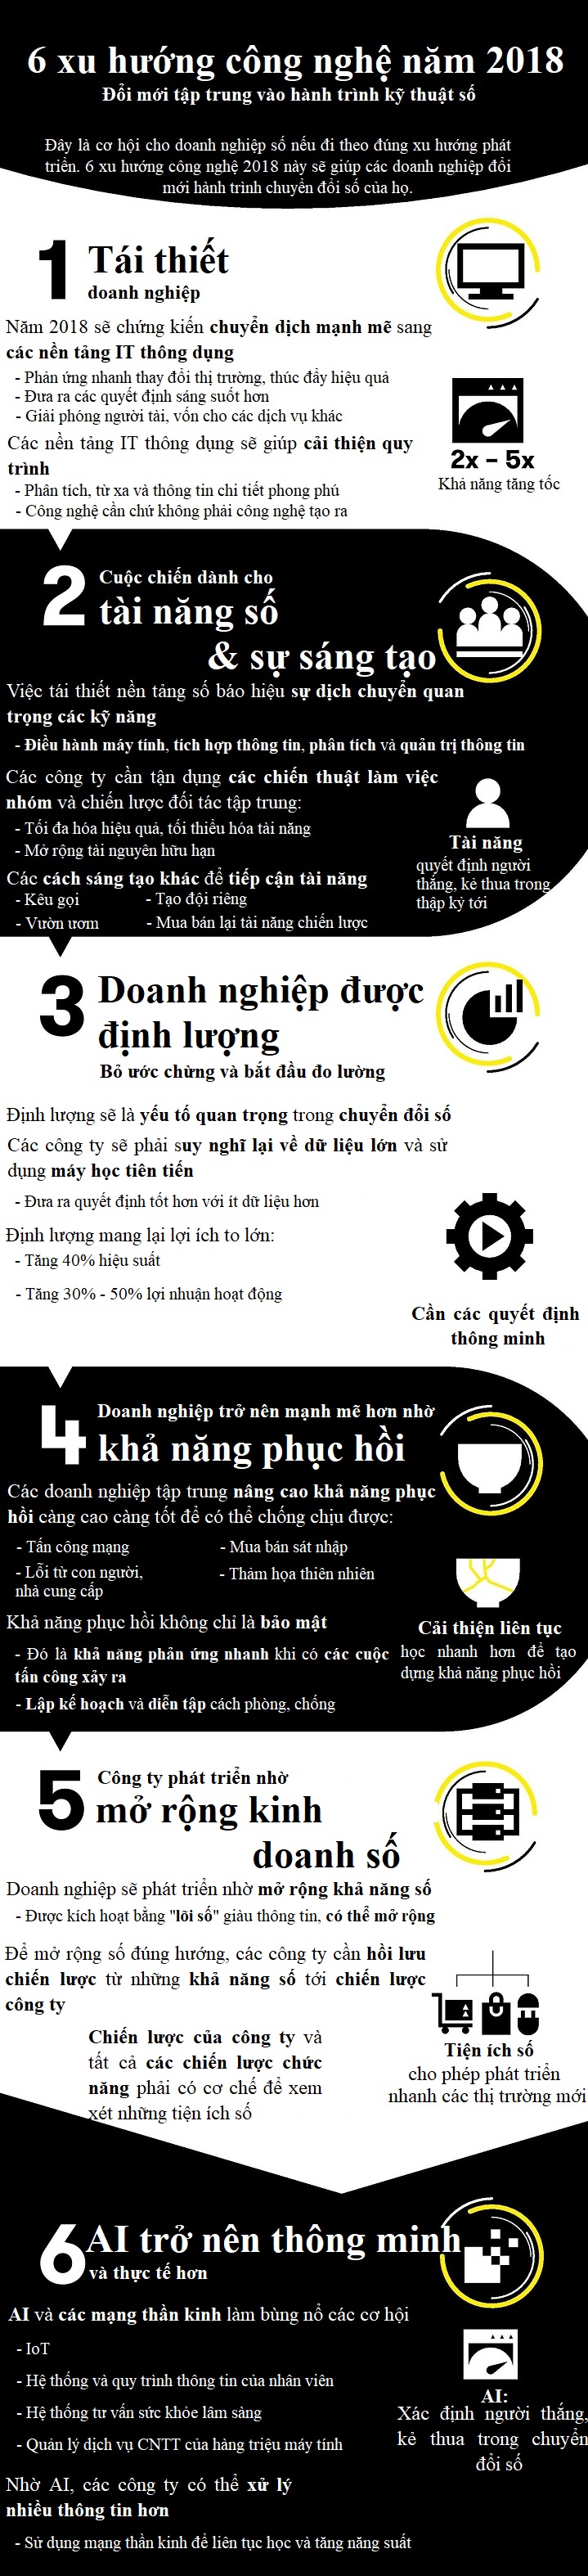 infographic nhung xu huong cong nghe giup doanh nghiep but pha trong chuyen doi so